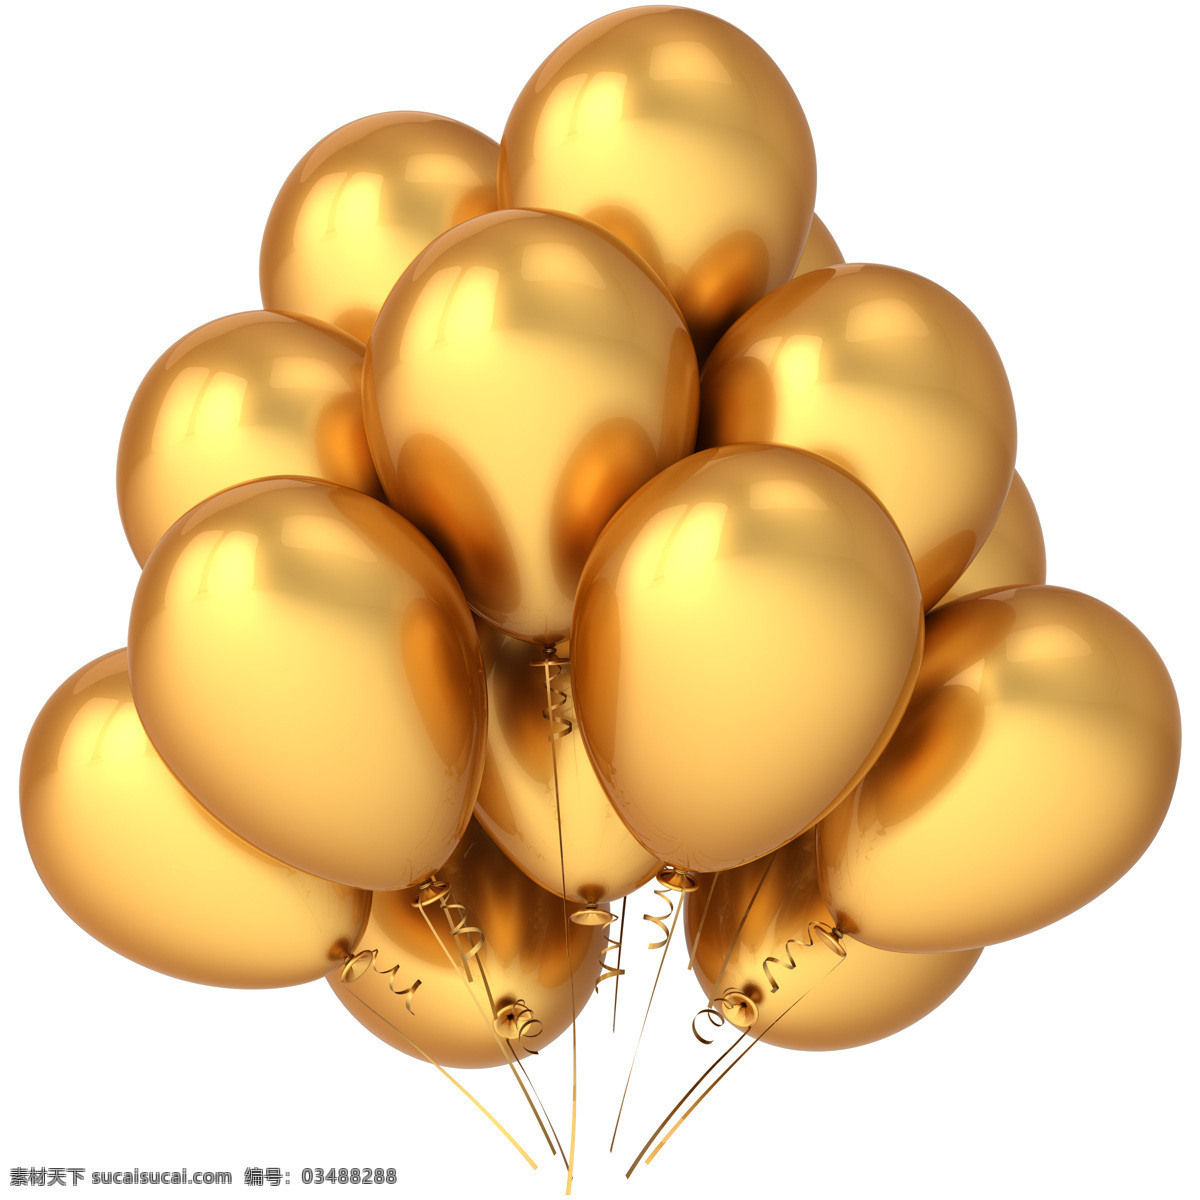 黄 颜色 气球 黄颜色气球 节日气球 色彩气球 气球图片 氢气球 其他类别 生活百科